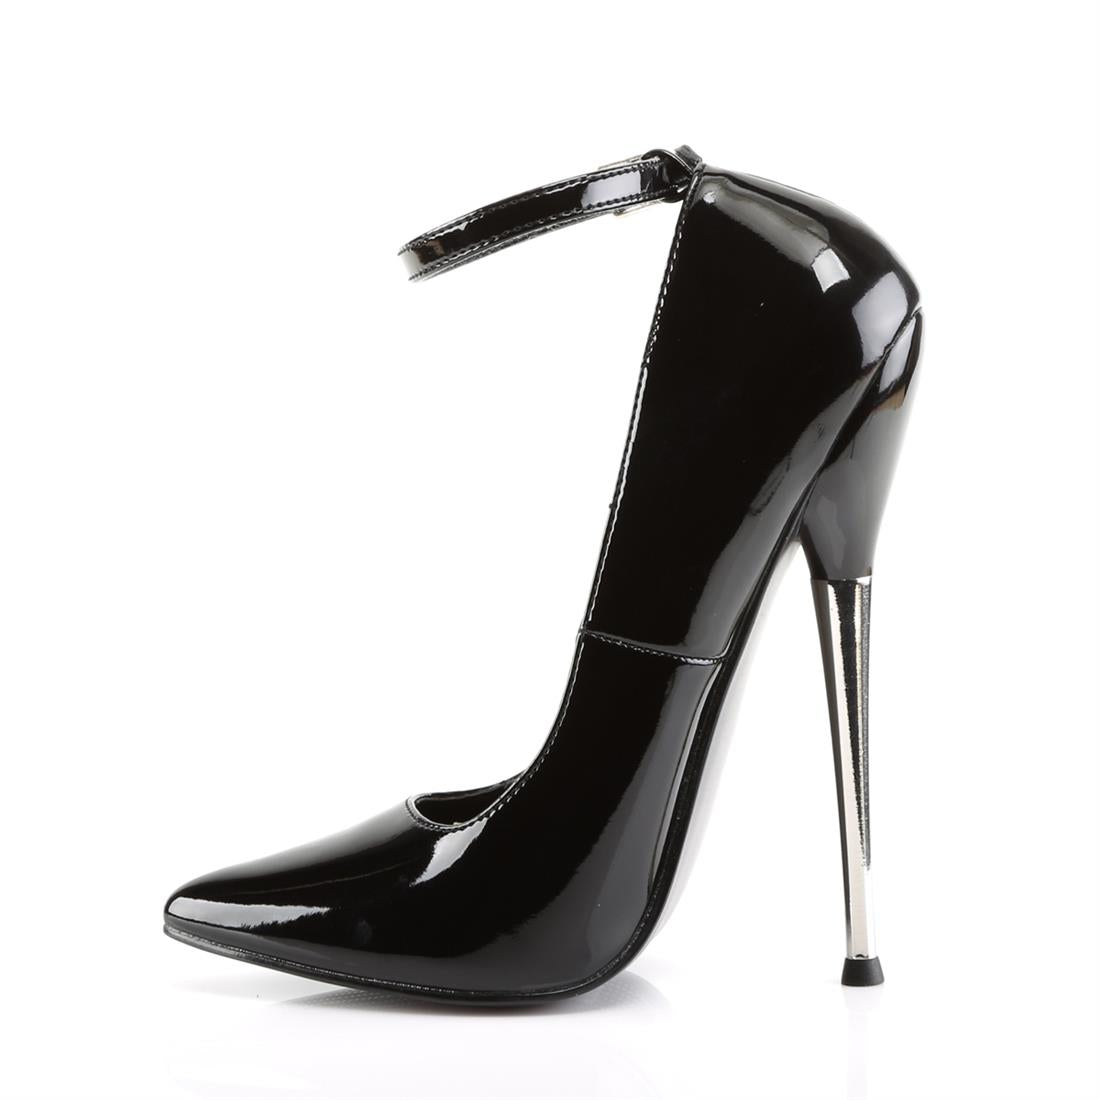 pleaser shoes 1 inch heels